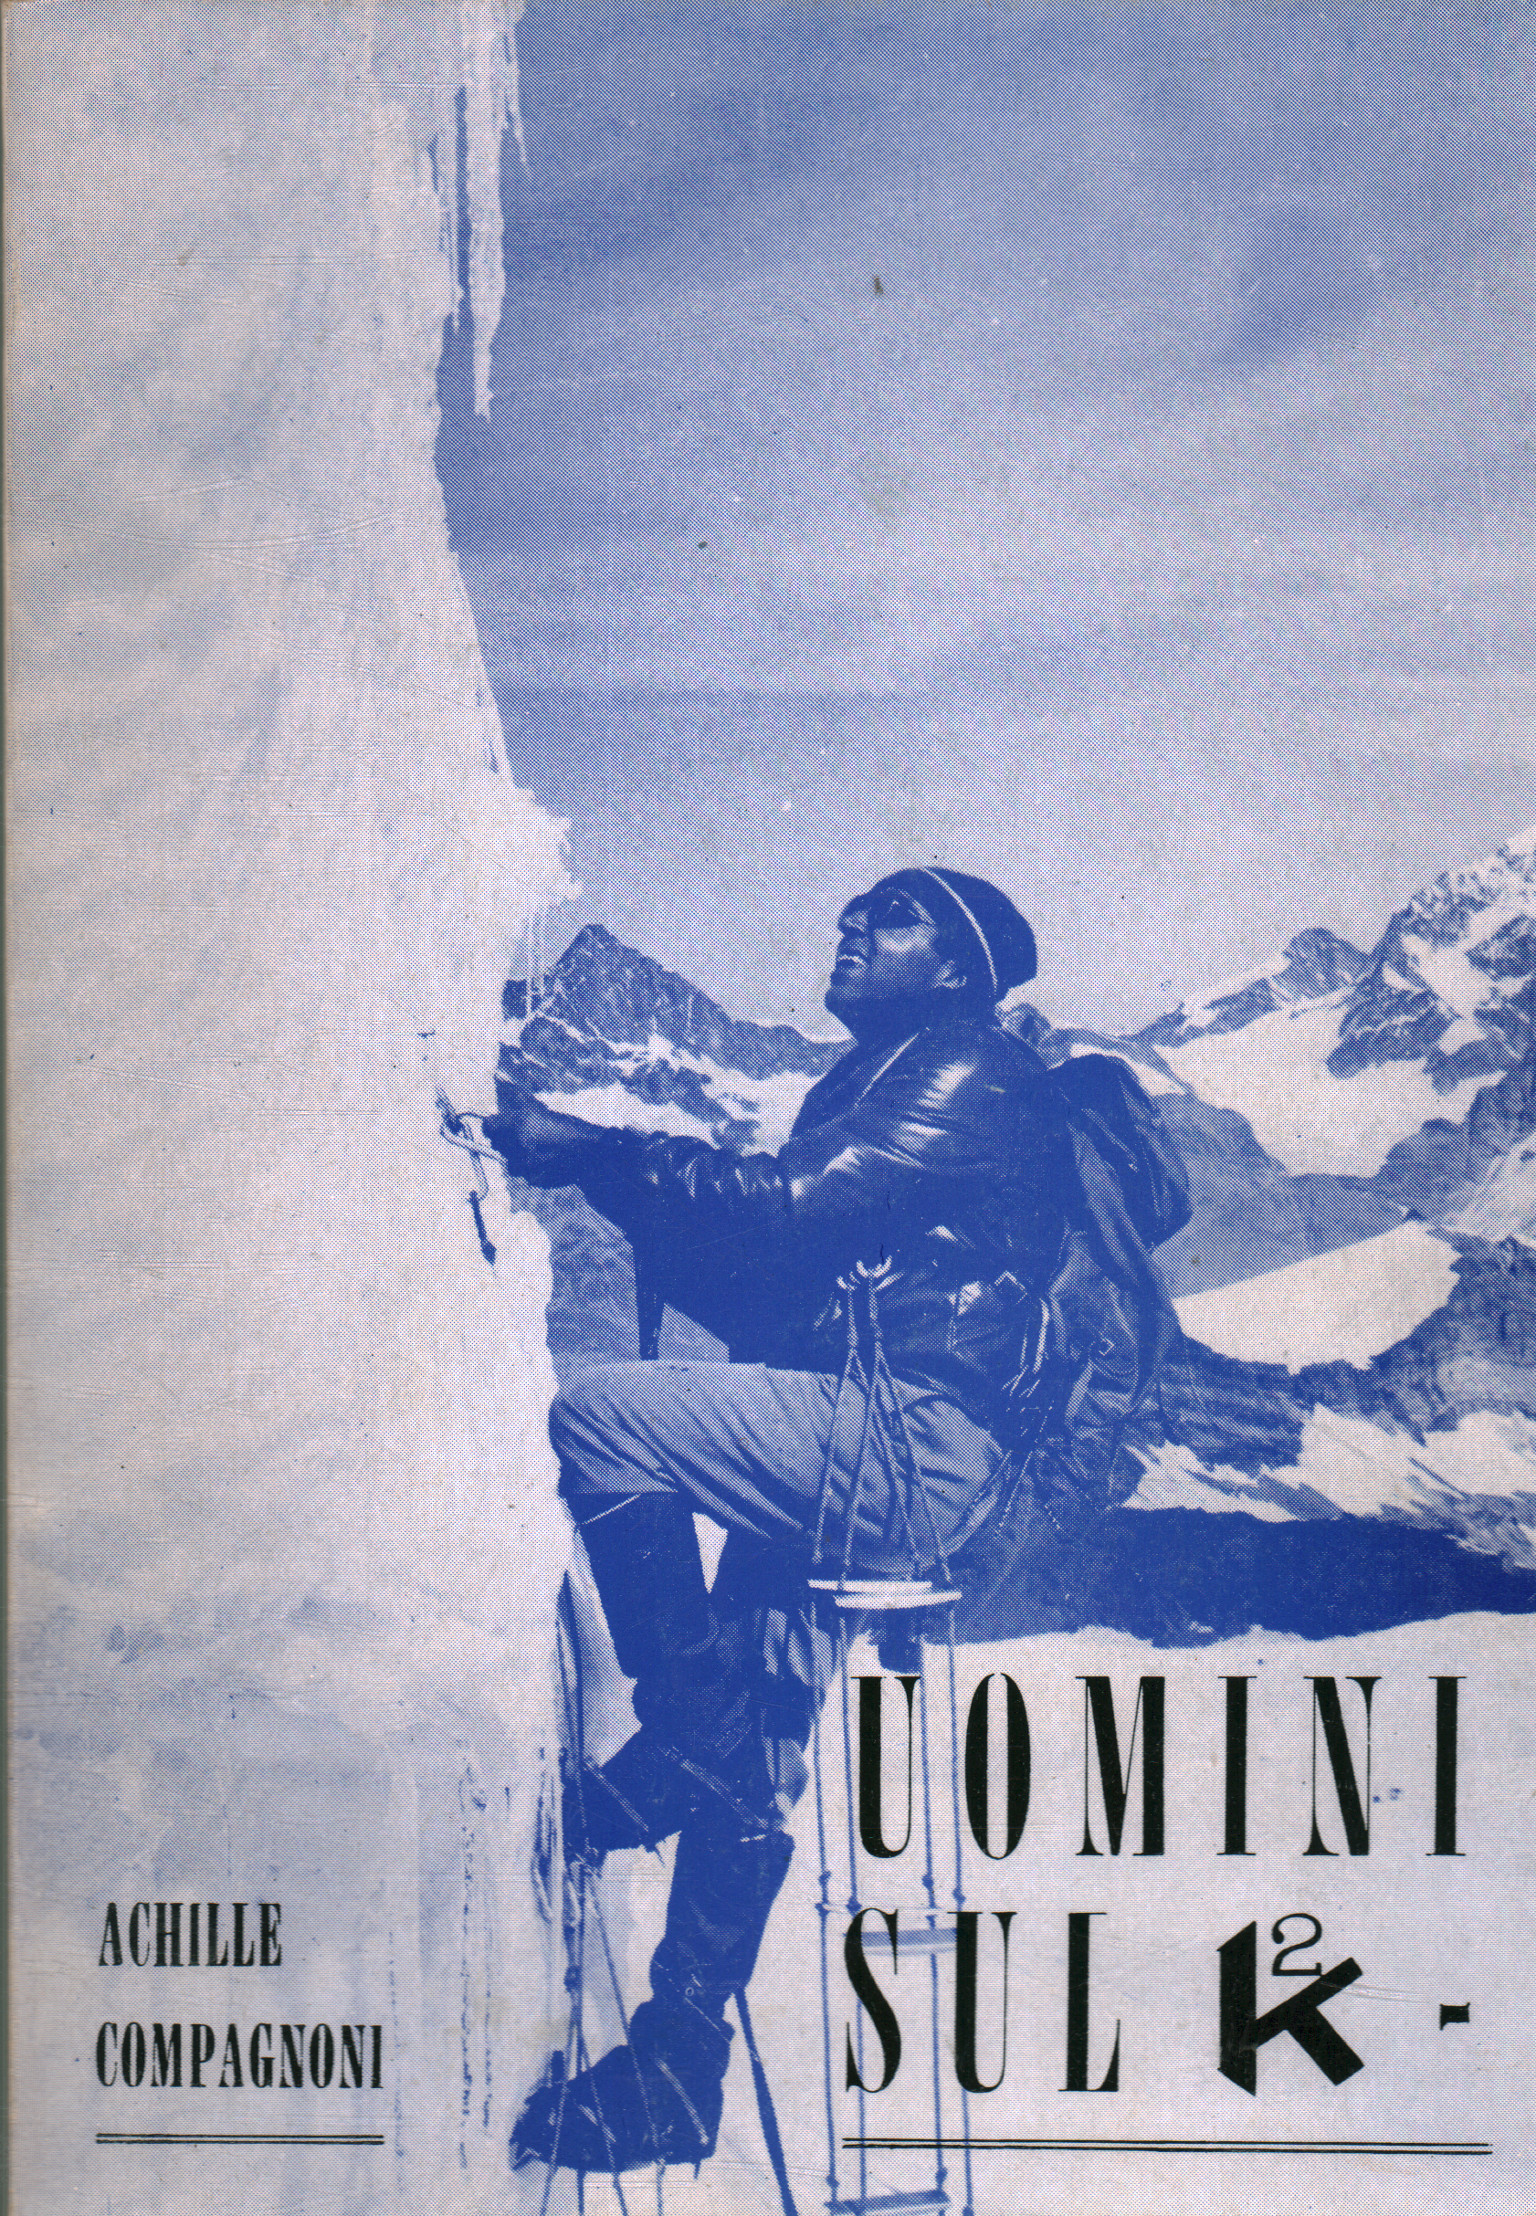 Uomini sul K2, Achille Compagnoni